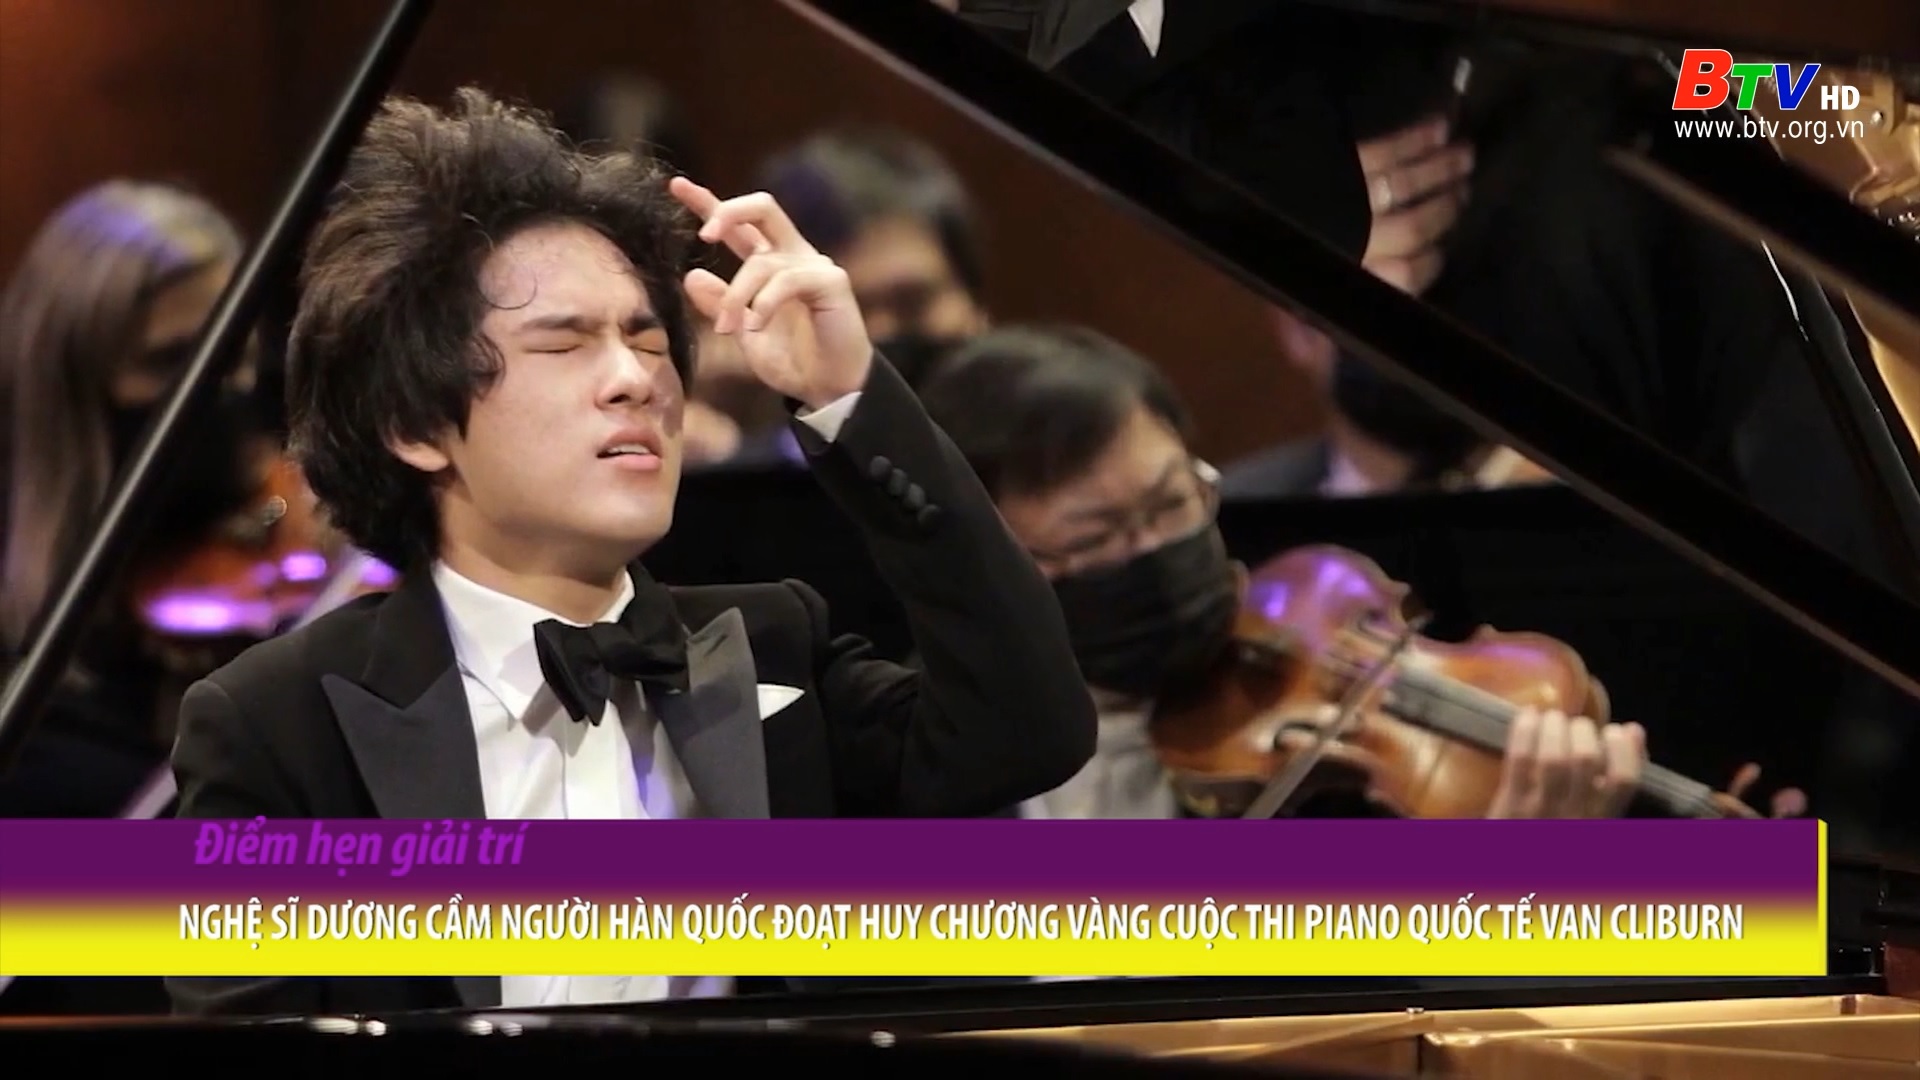 Nghệ sĩ dương cầm người Hàn Quốc đoạt huy chương vàng cuộc thi Piano quốc tế Van Cliburn